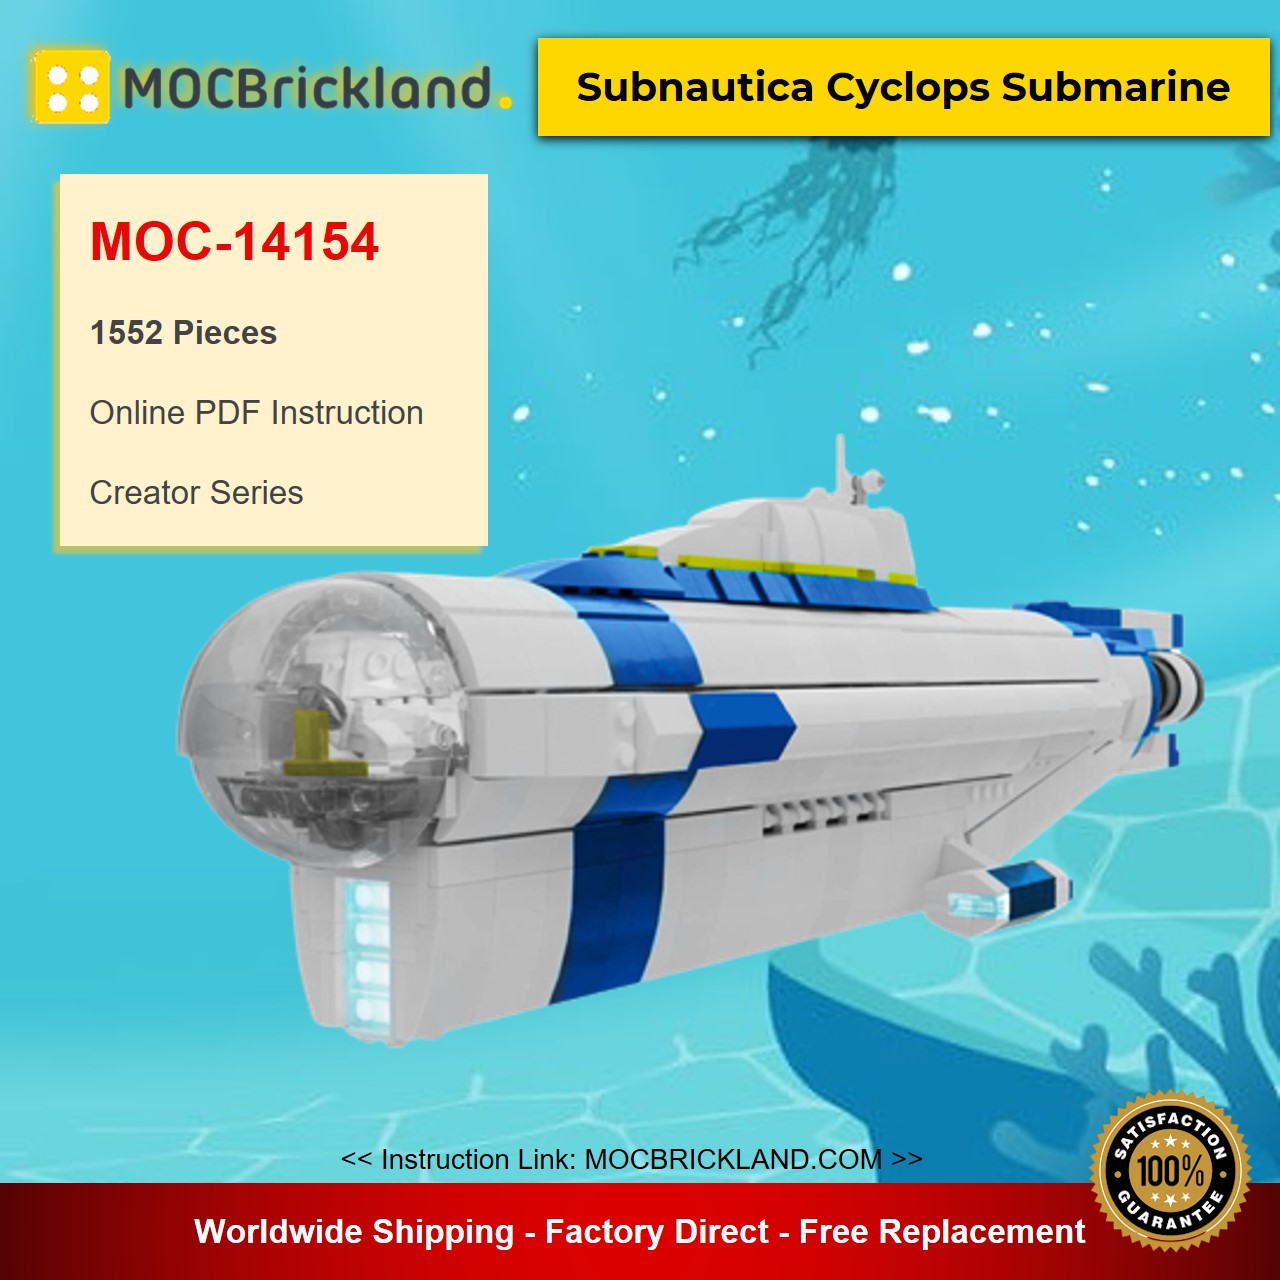 MOCBRICKLAND MOC-14154 Subnautica Cyclops Submarine